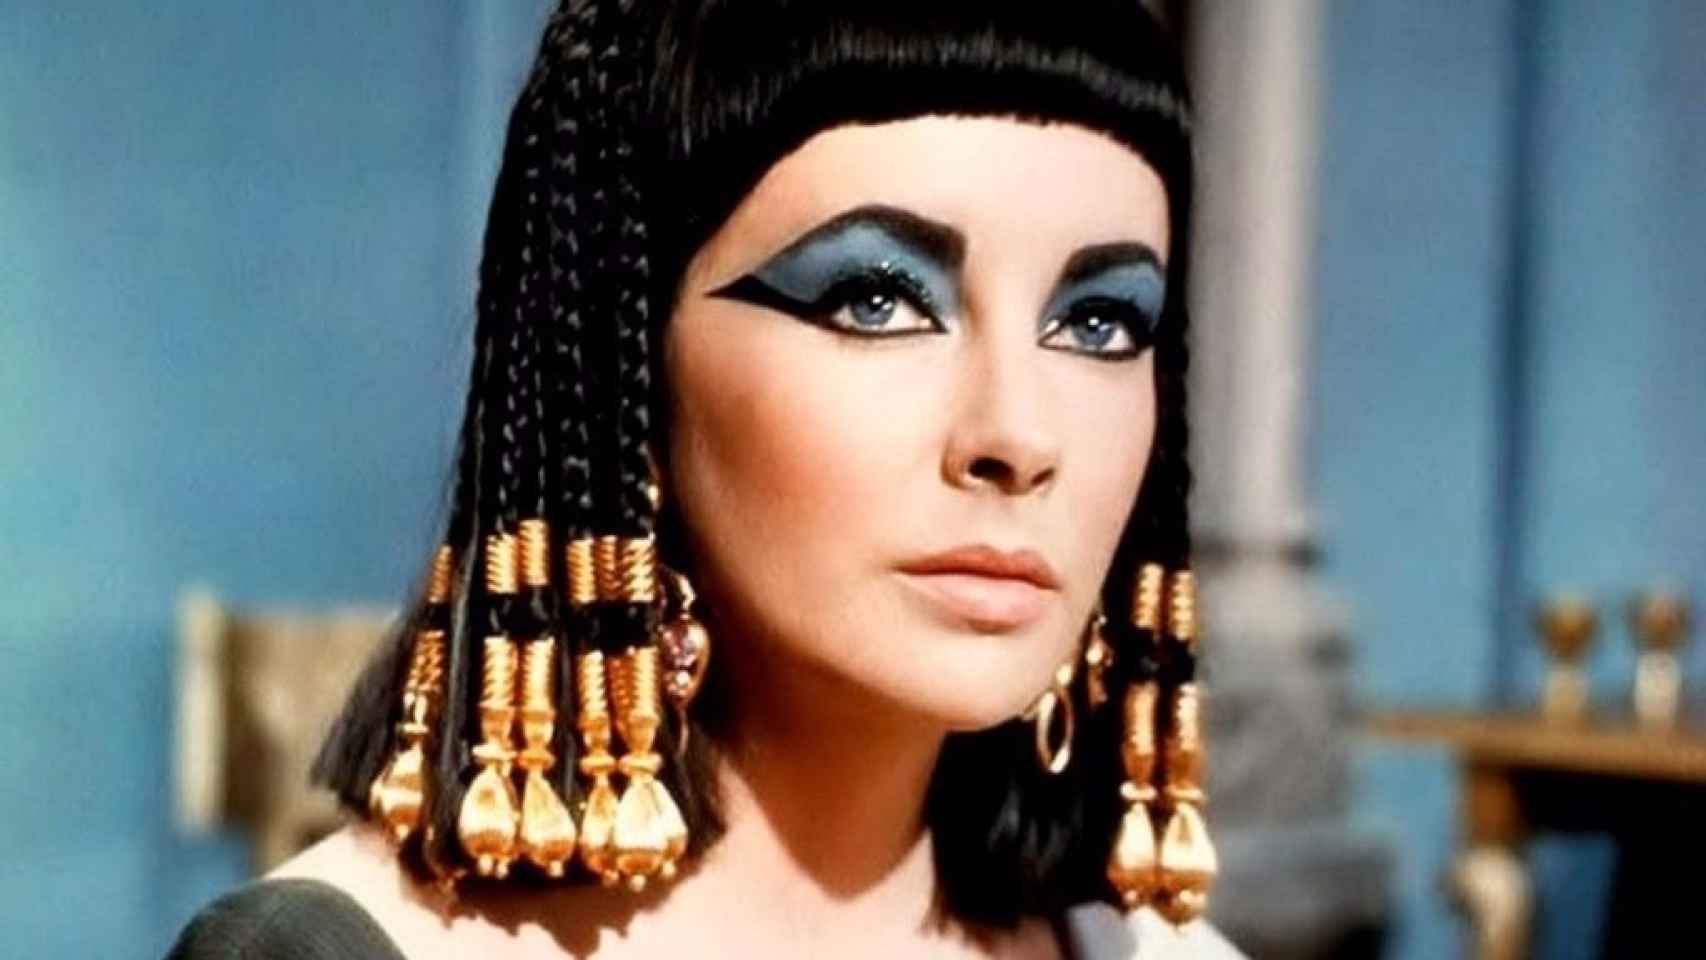 Cleopatra utilizaba los aceites para cuidar su piel. | Foto: Elizabeth Taylor en Cleopatra, (1963).